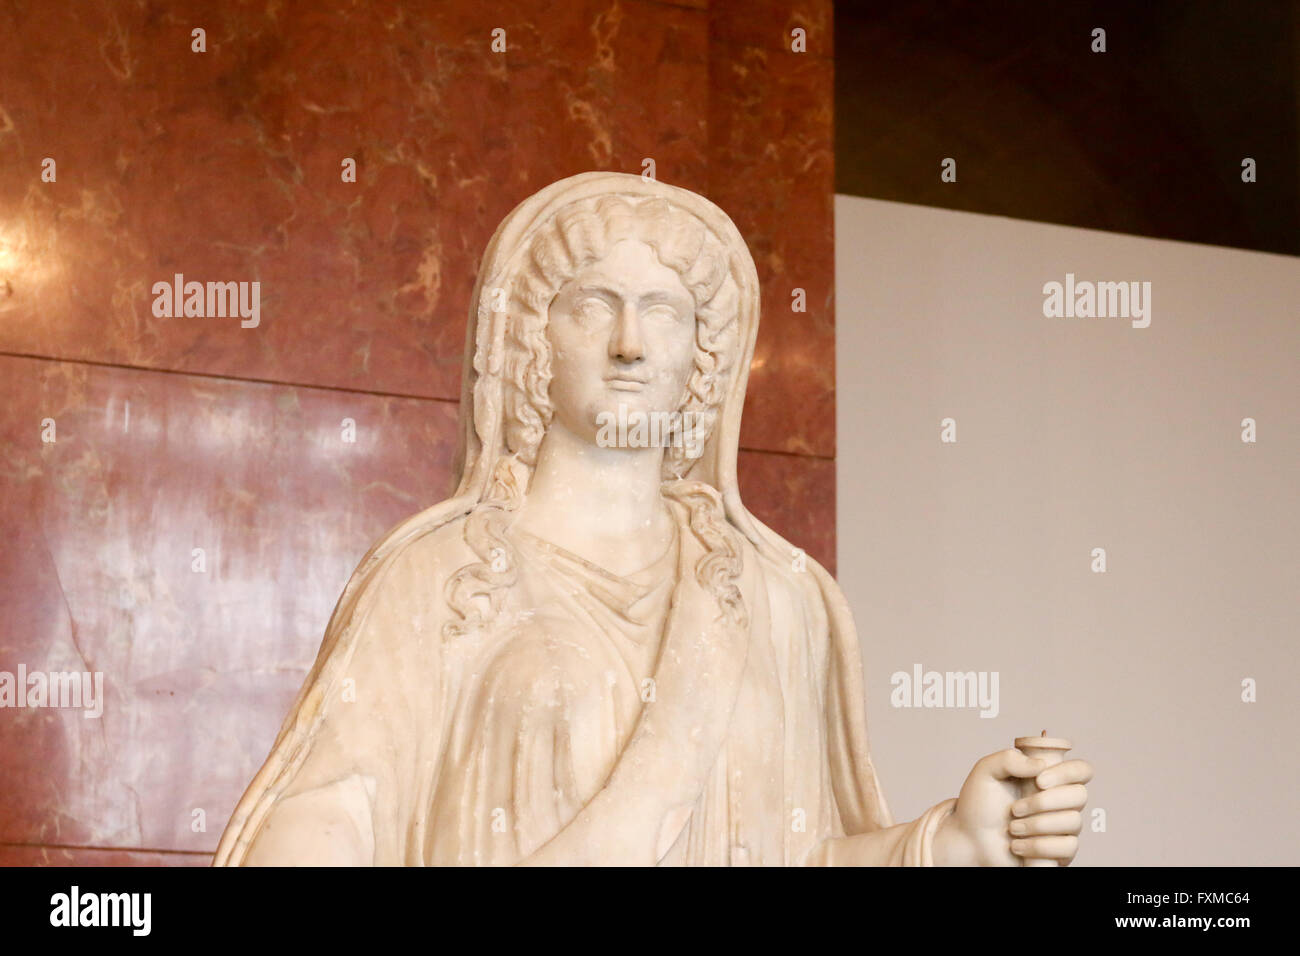 La sculpture grecque femelle en musée du Louvre, Paris, France. Banque D'Images